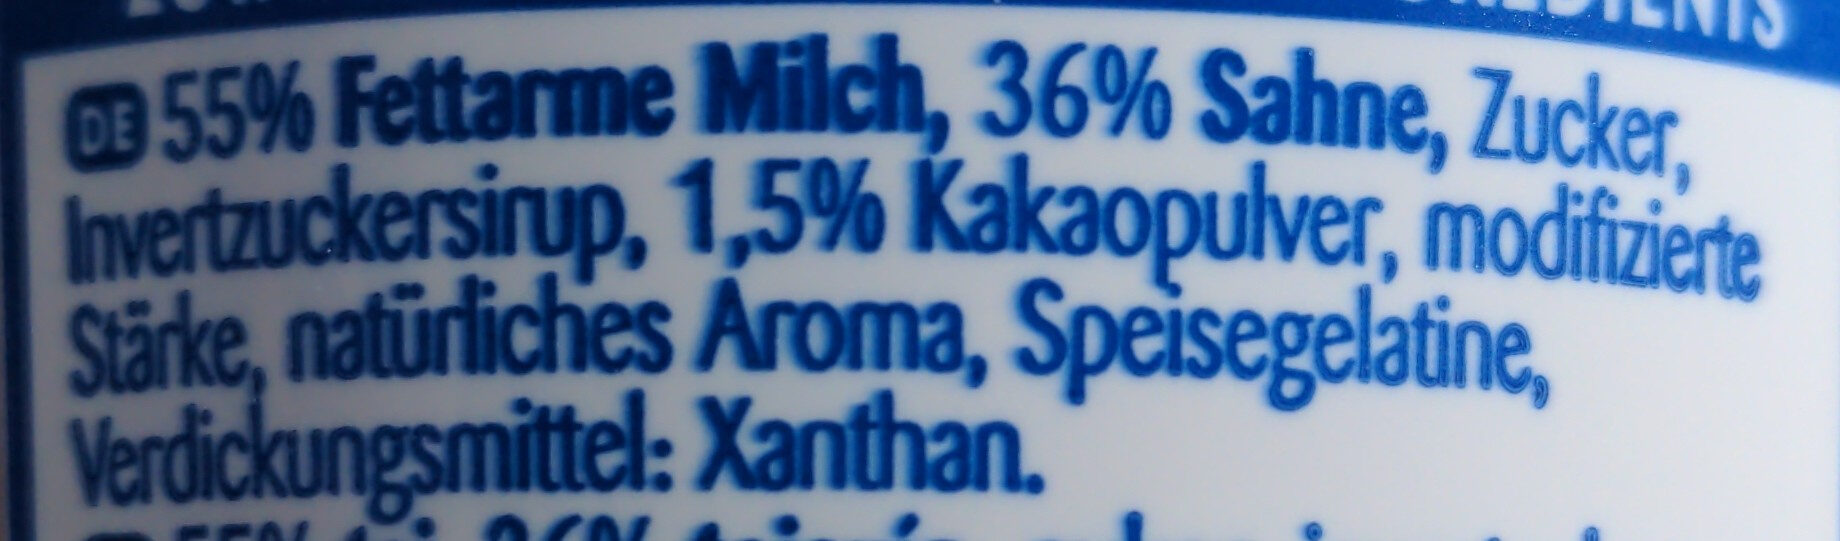 Milk Shake Schoko - Ingredients - de